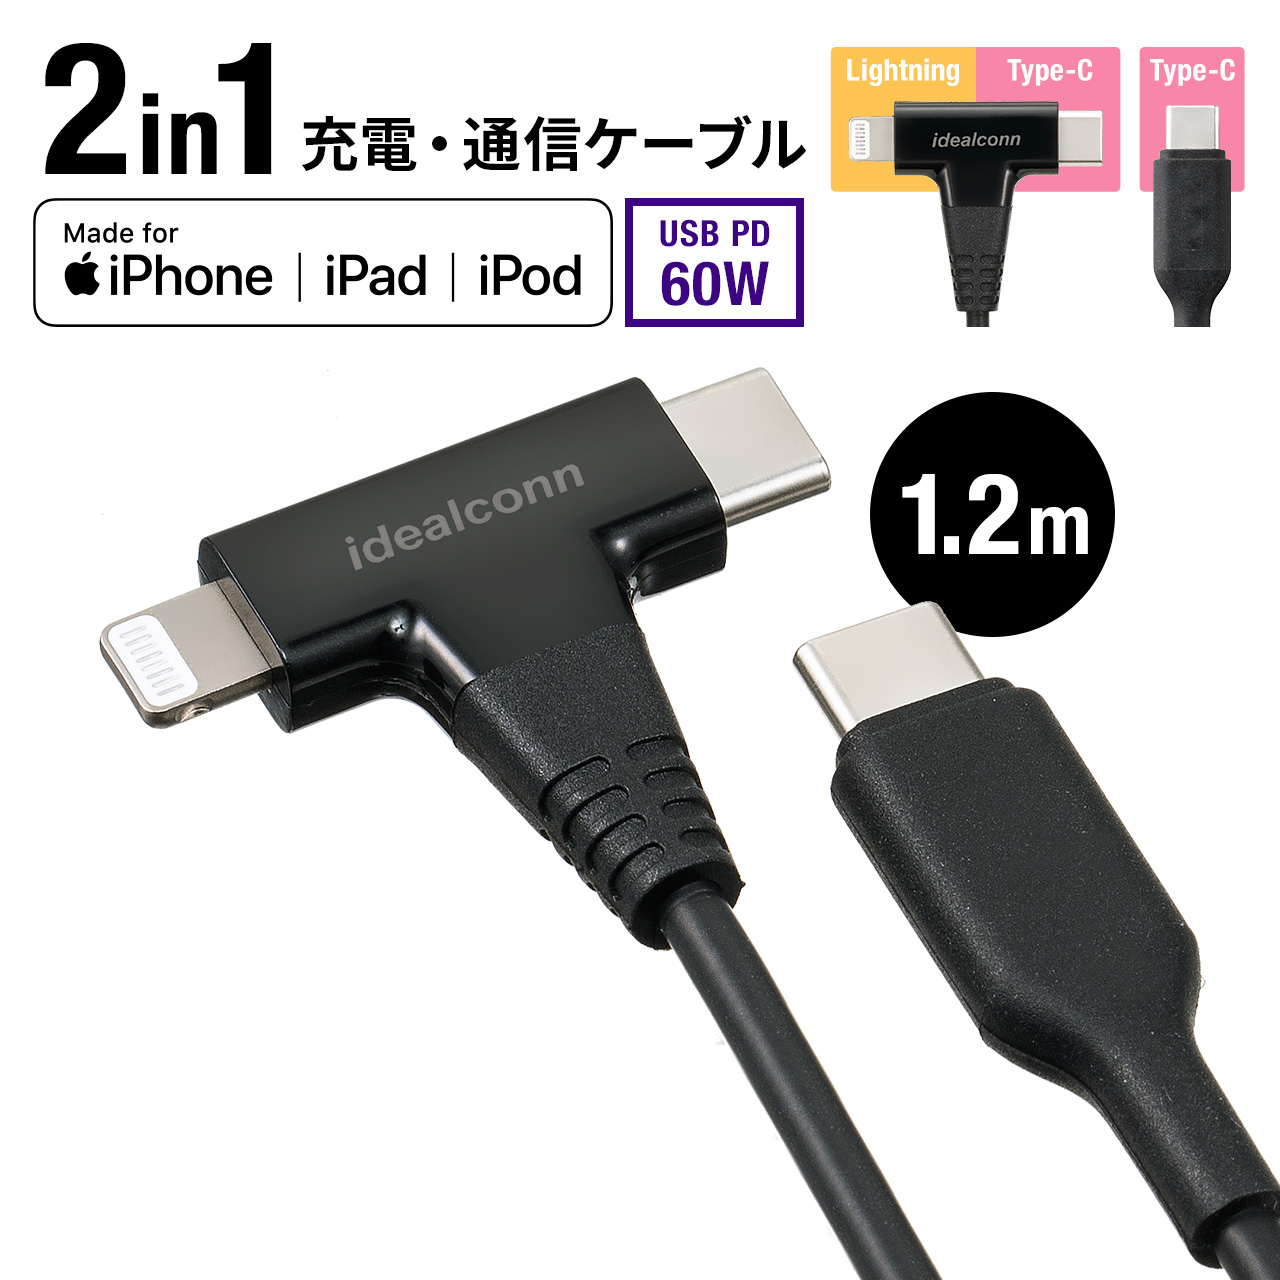 [12L C] 有線イヤホン Type-C Lightning 端子選択   マイク リモコン付き iPhone15 iPad USB タイプC ライトニング 通話 音楽 動画 イヤホン イヤフォン